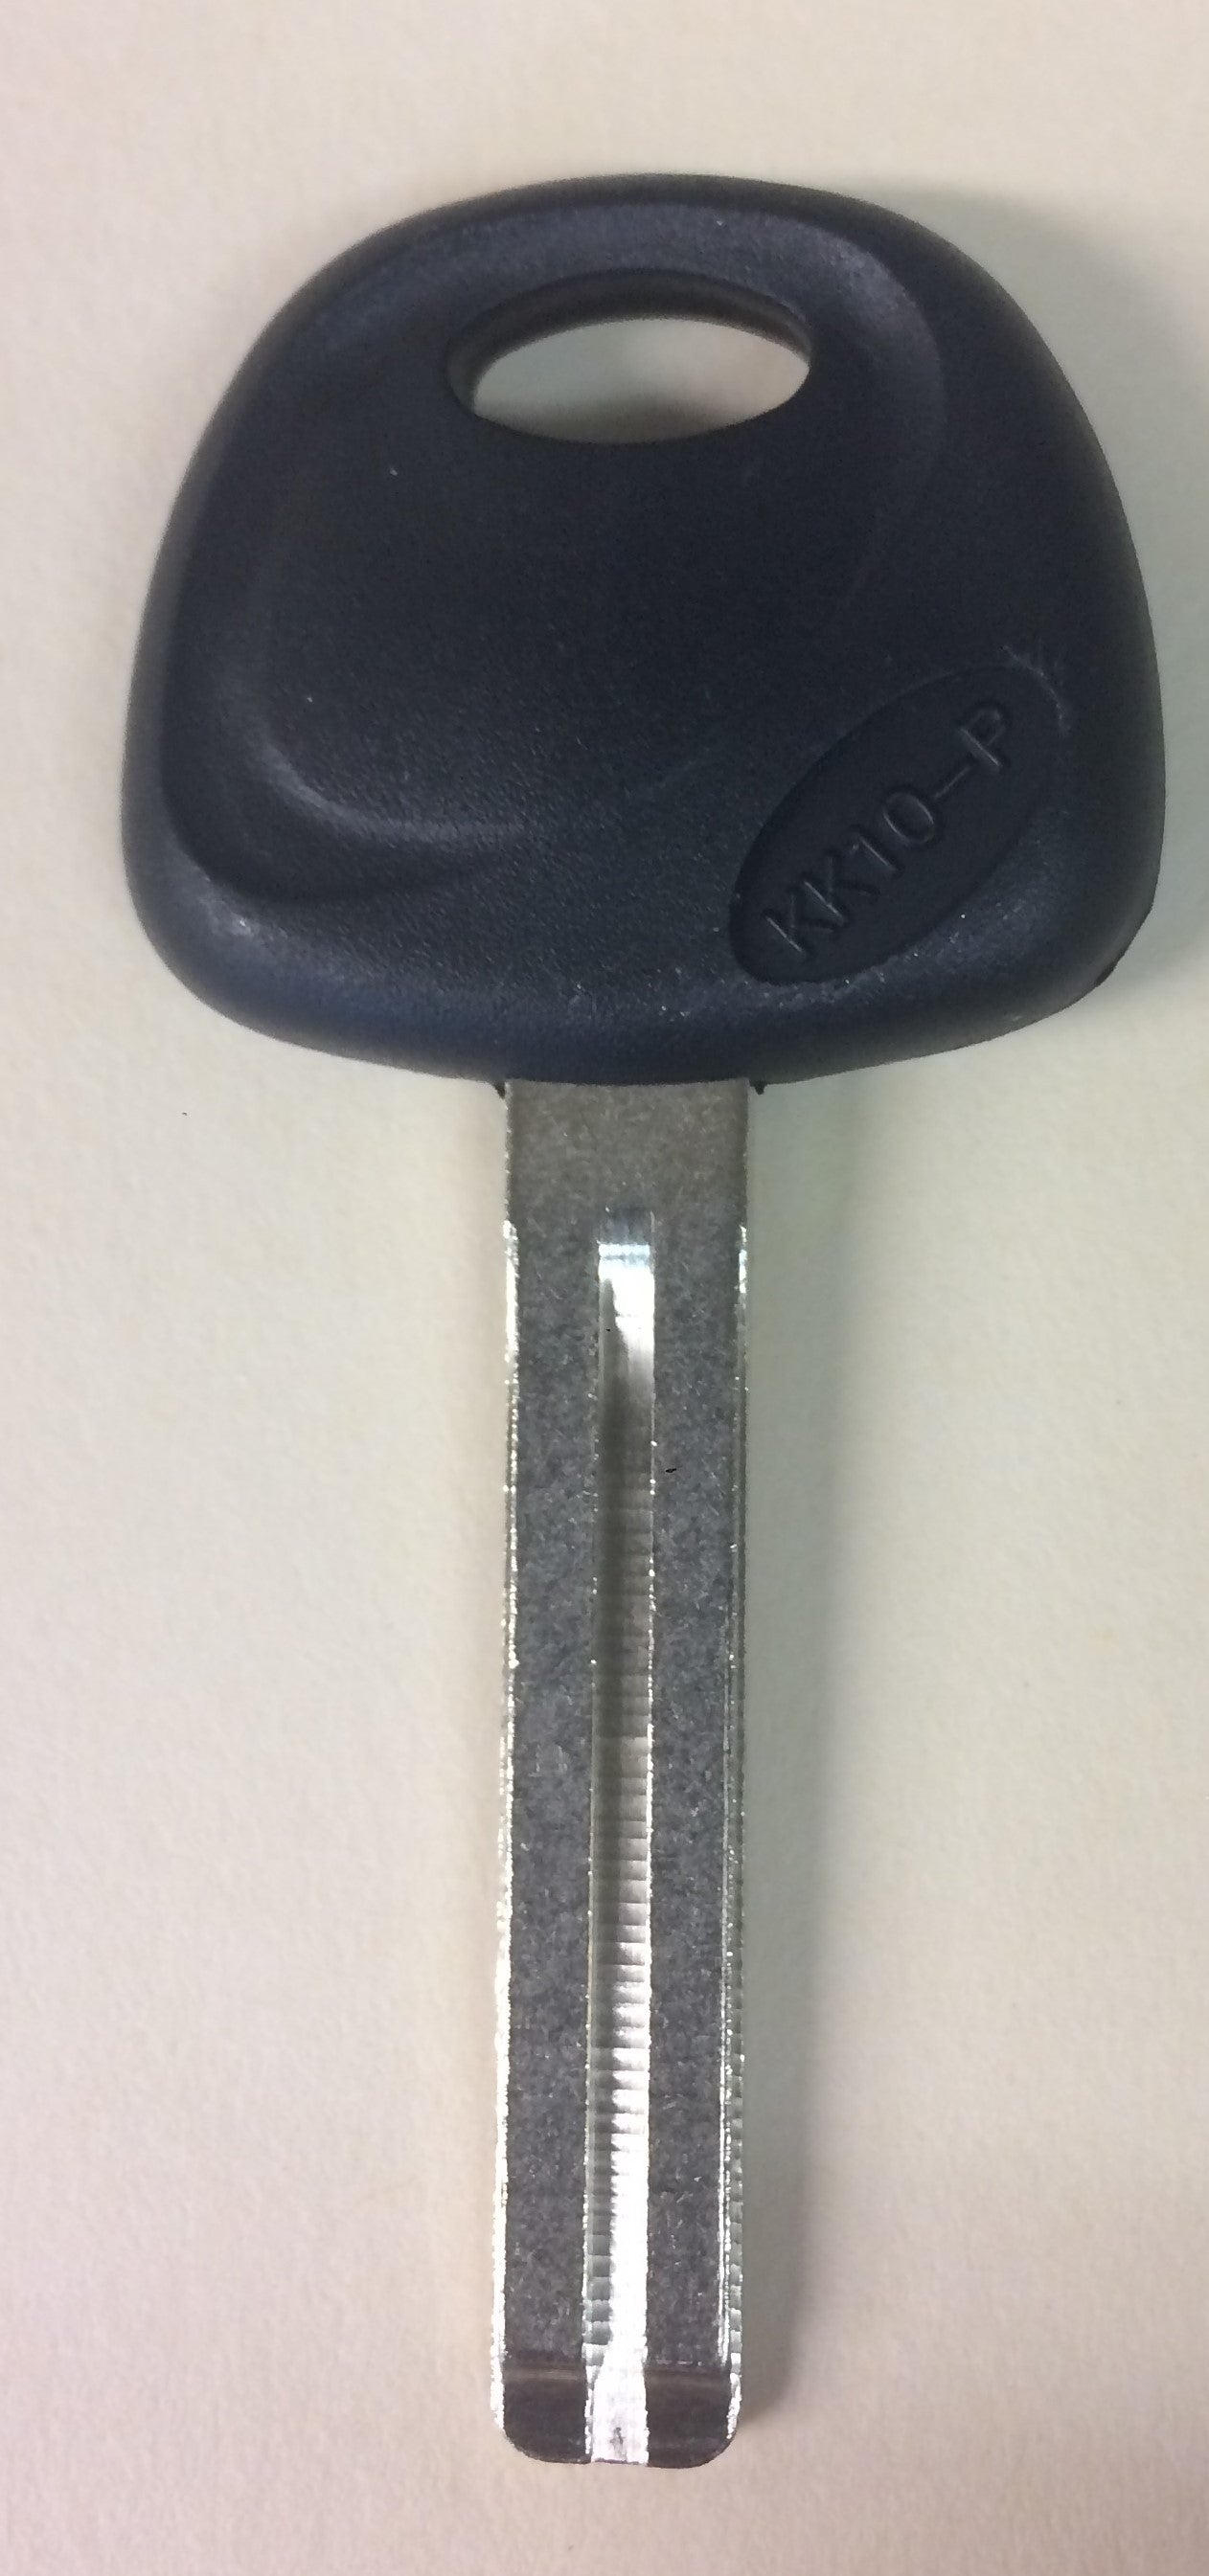 Hyundai KK10P Plastic Head Key (No Chip) - ZIPPY LOCKSHOP